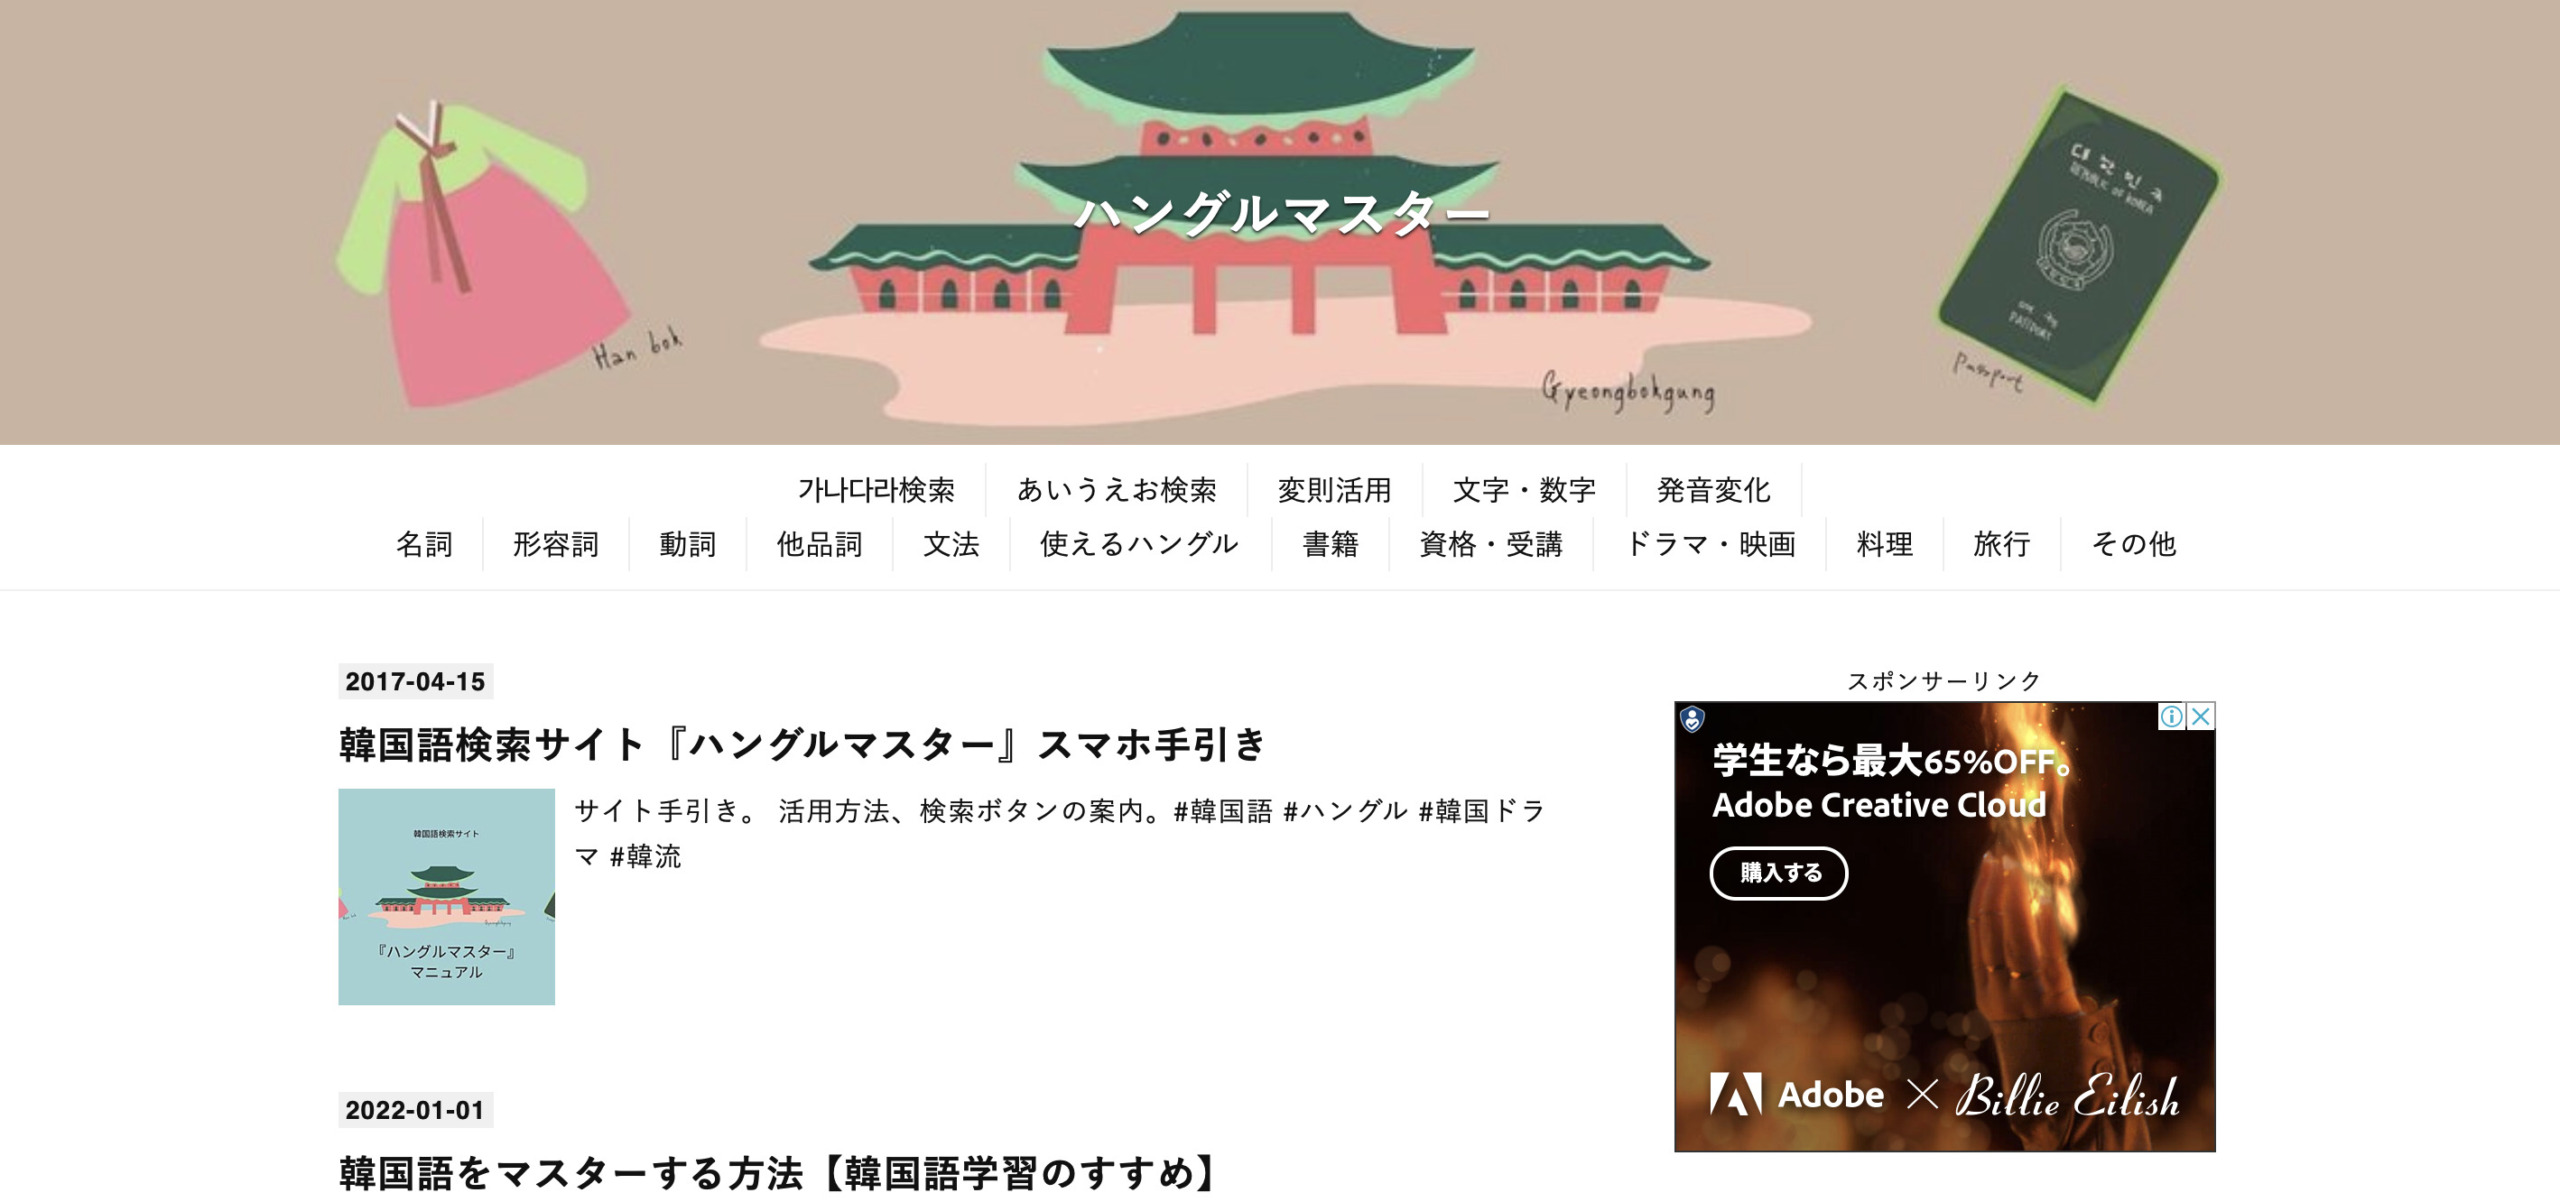 韓国語学習に役立つ無料サイト・ハングルマスター